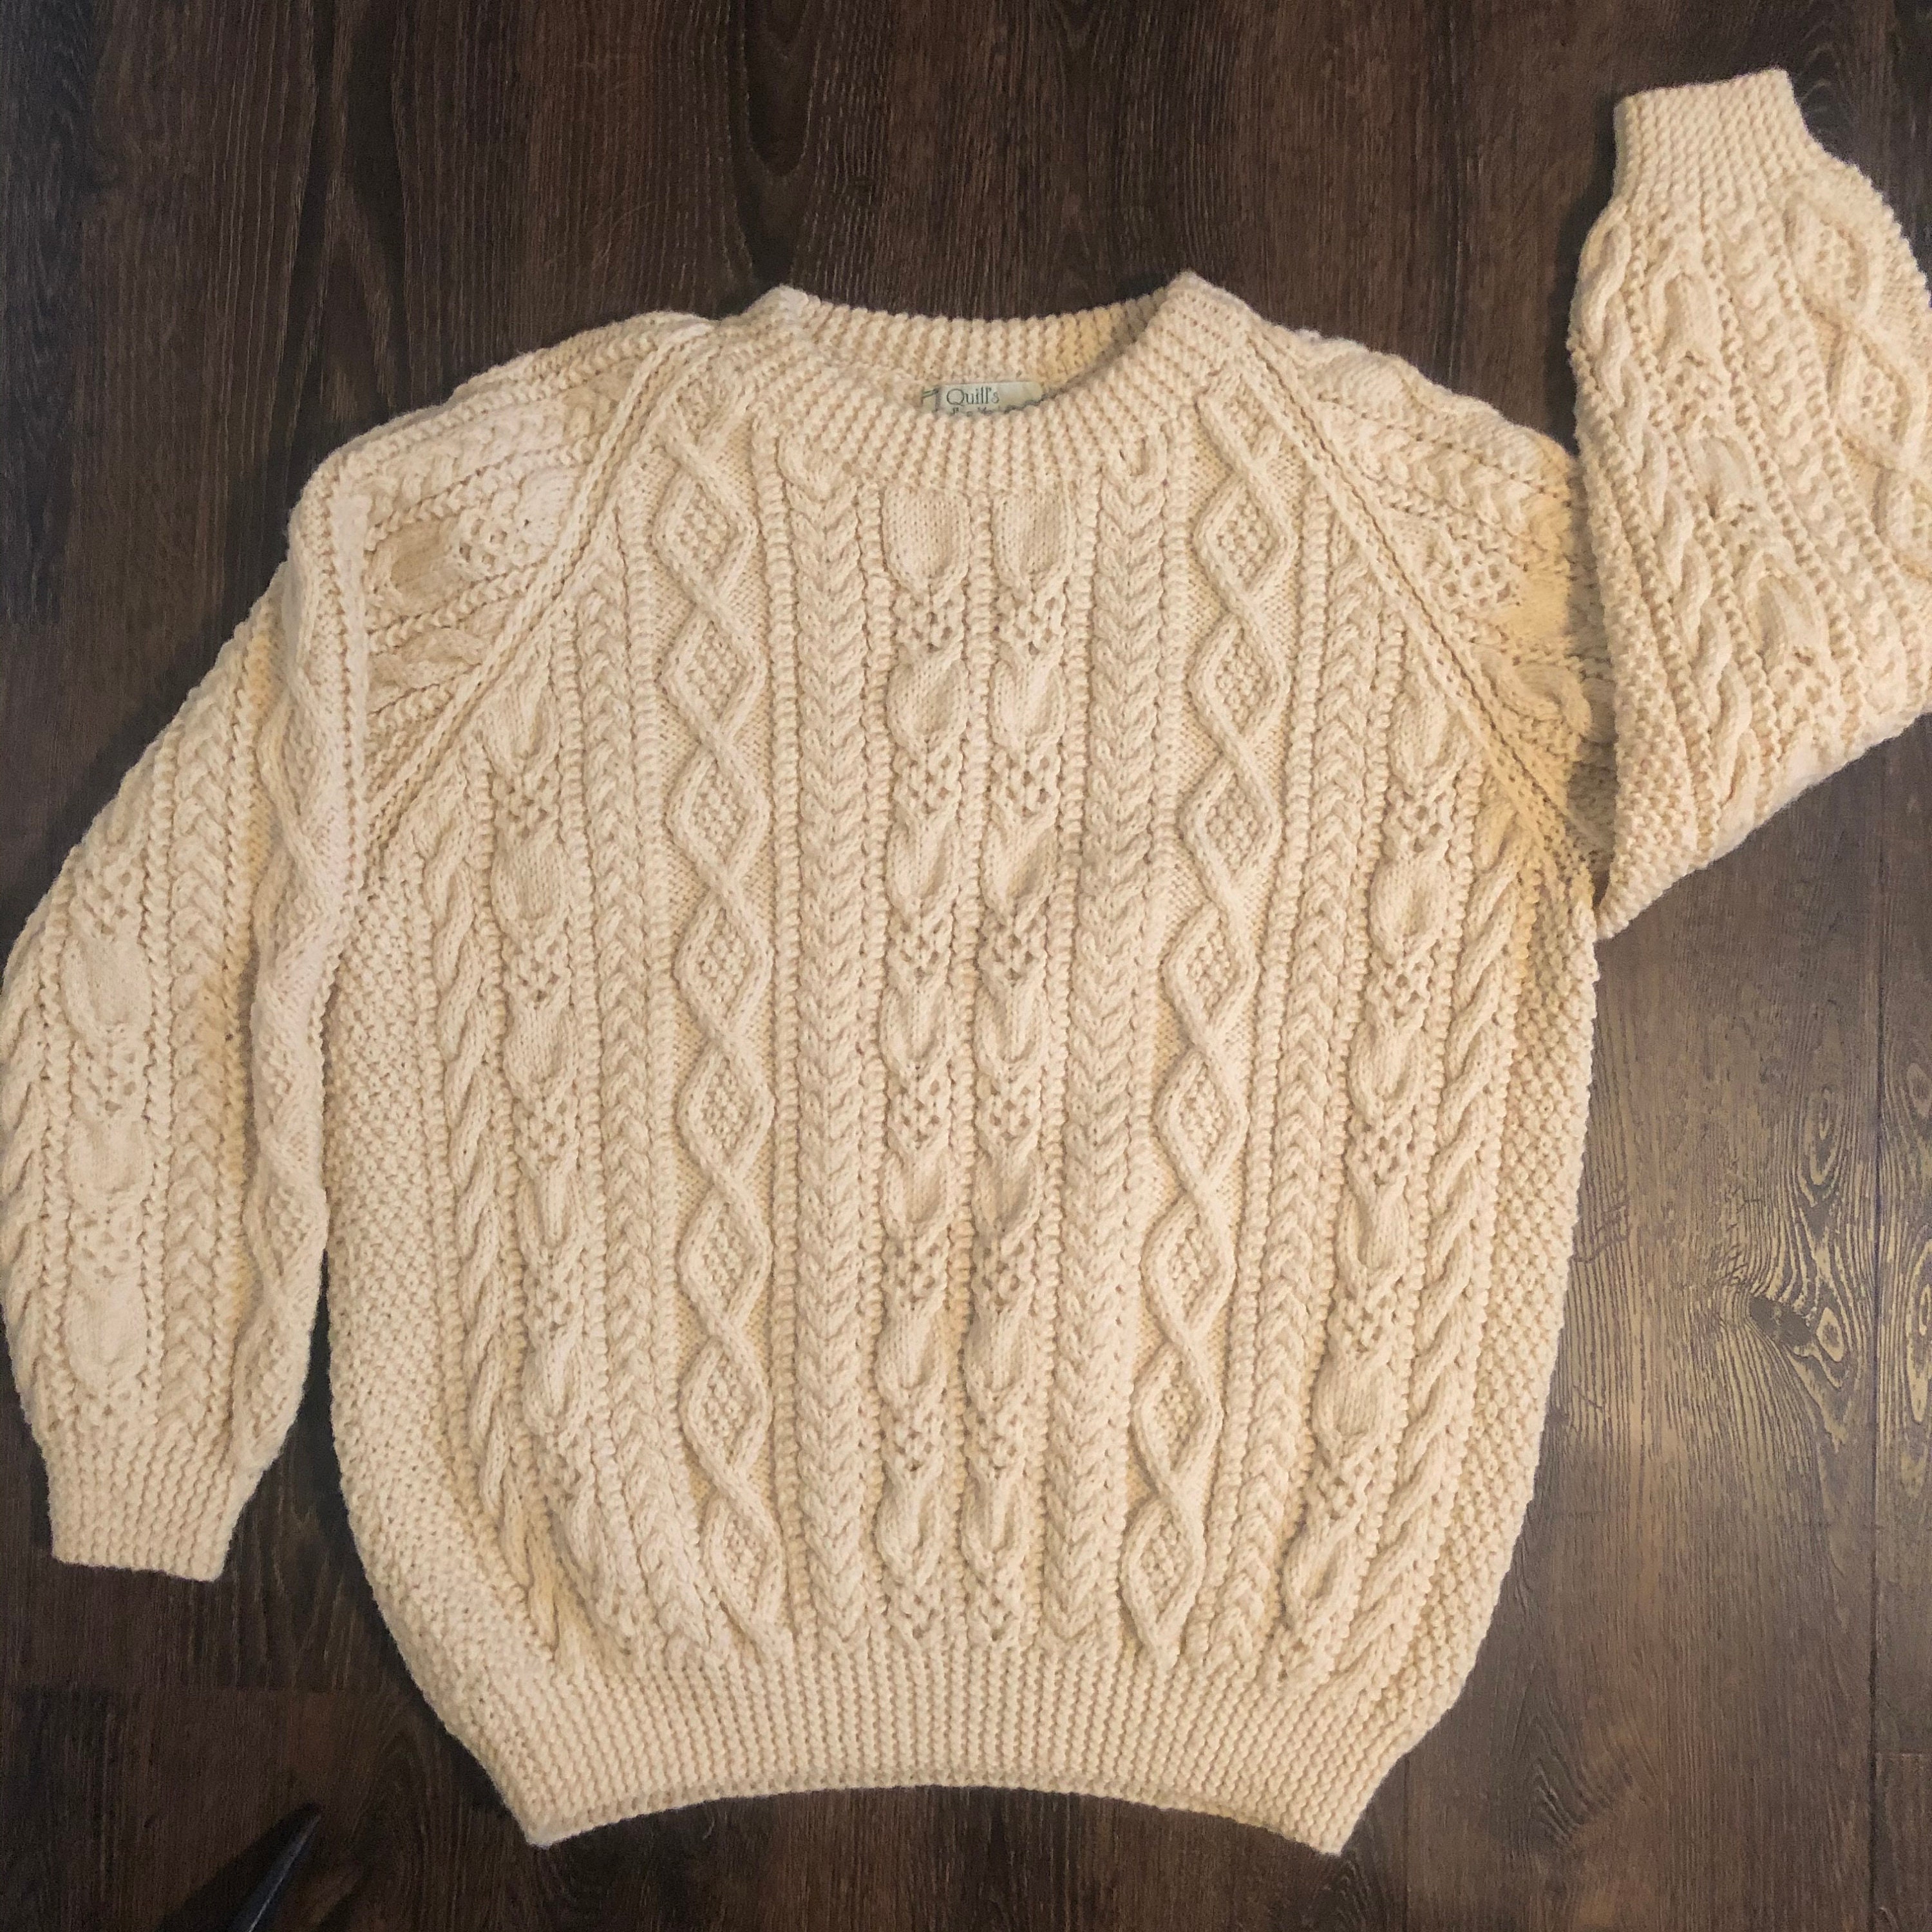 Vintage Quill's Woolen Market Irish Fishermans sweater - 2XL